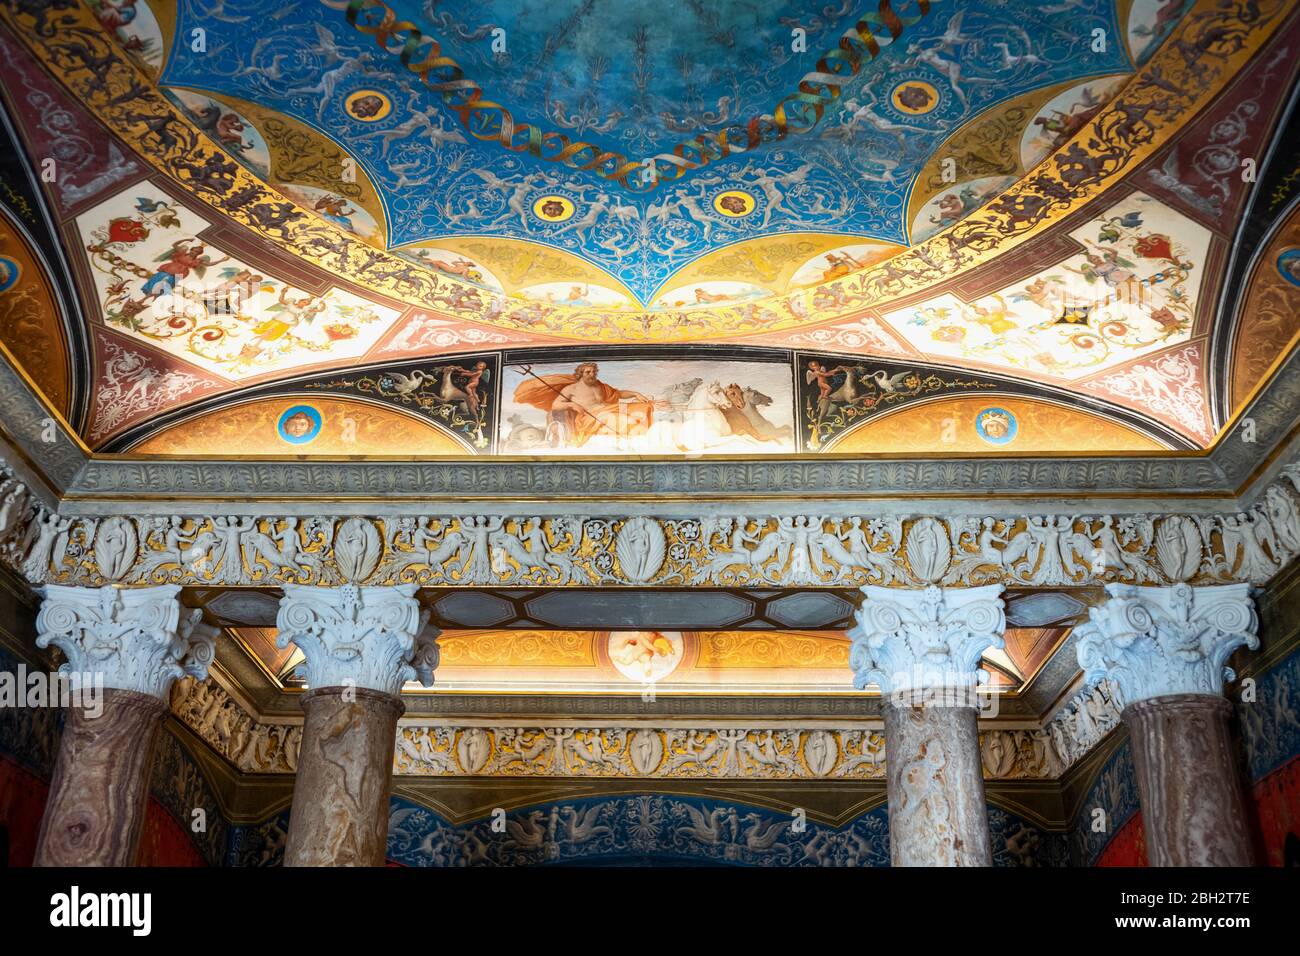 Rom, Italien - 20. August 2017: Villa Torlonia, Detail der Decke des großen Badezimmers mit mythologischen Göttlichkeitsfiguren Stockfoto